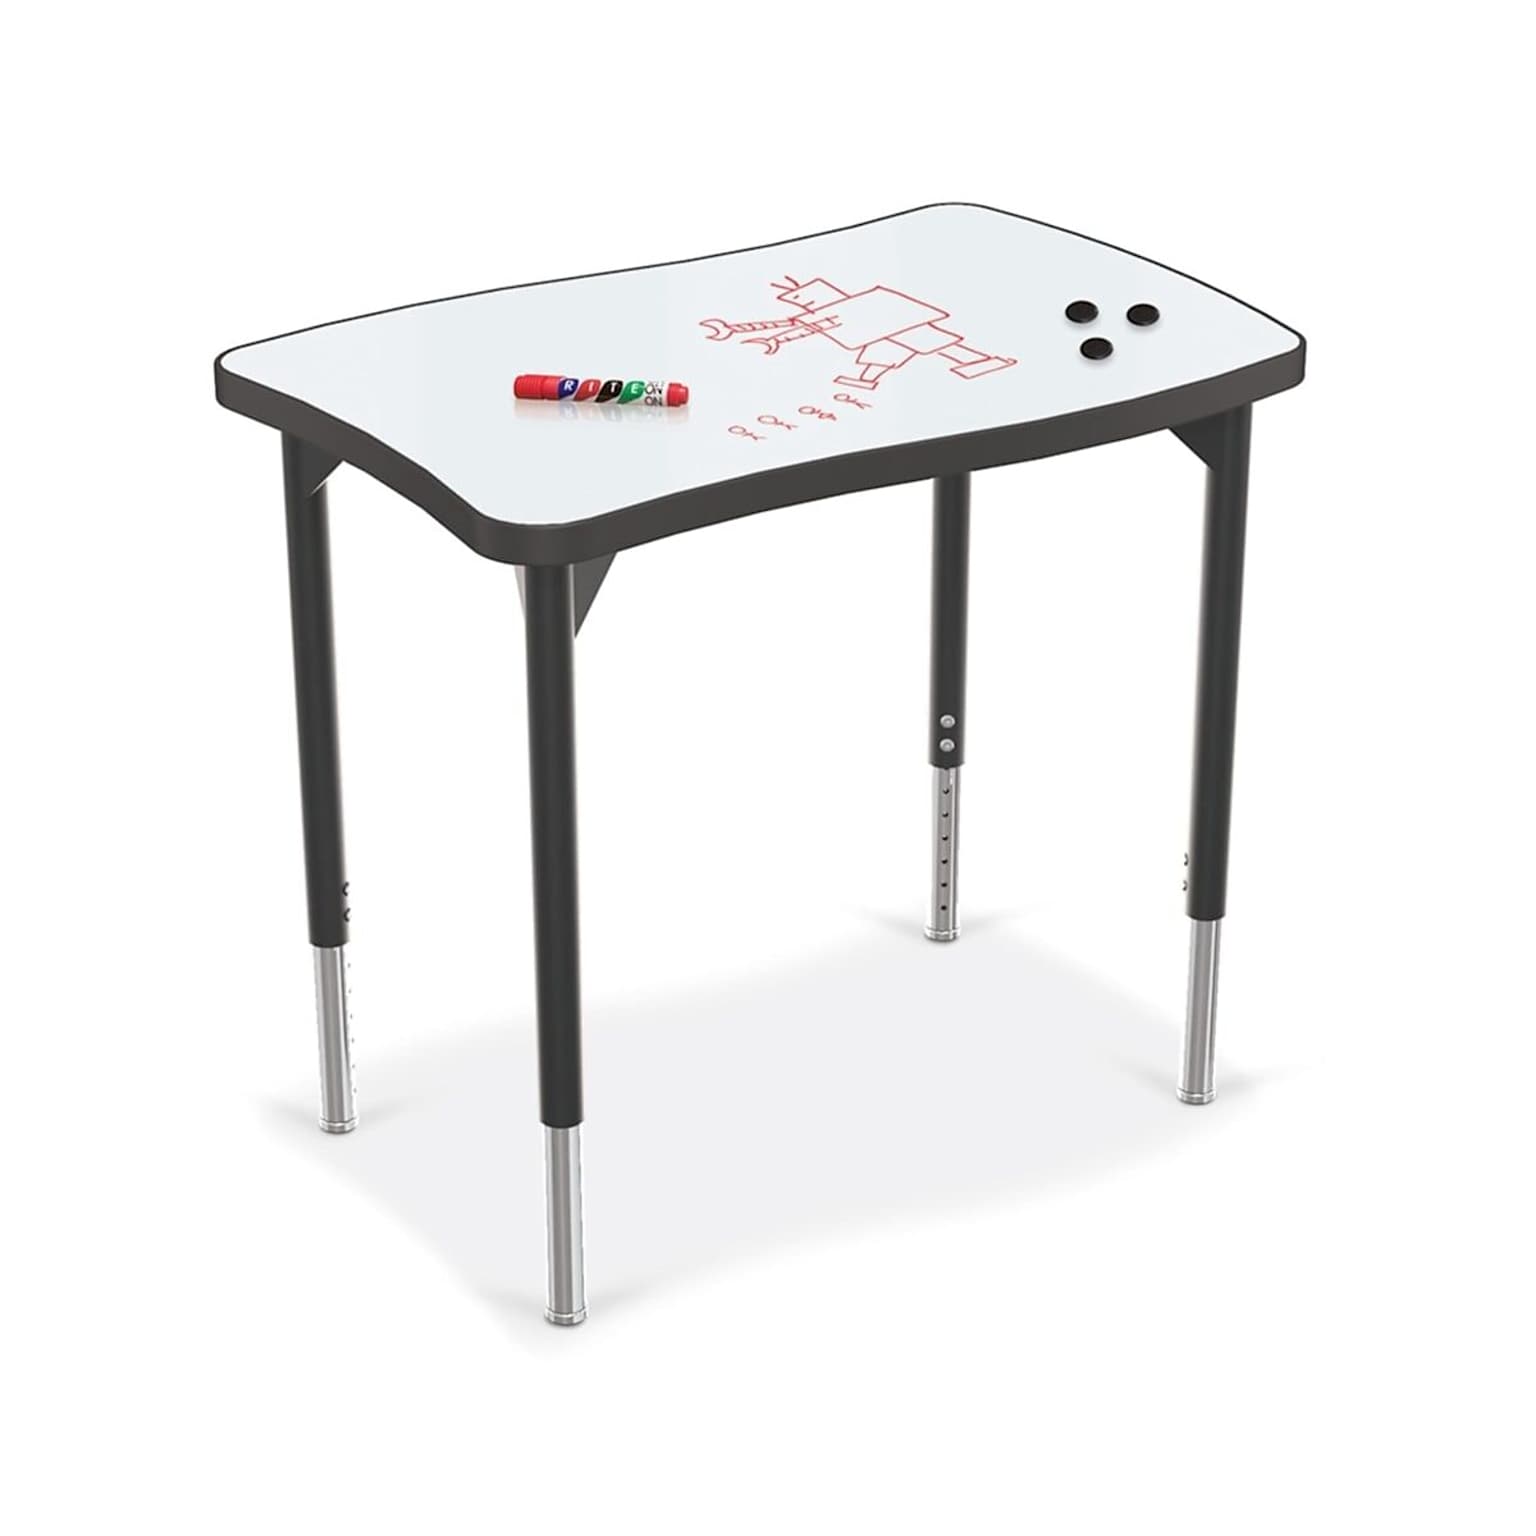 MooreCo Hierarchy Creator Desk, Porcelain Steel Dry Erase Marker Top, Black Legs (70528)